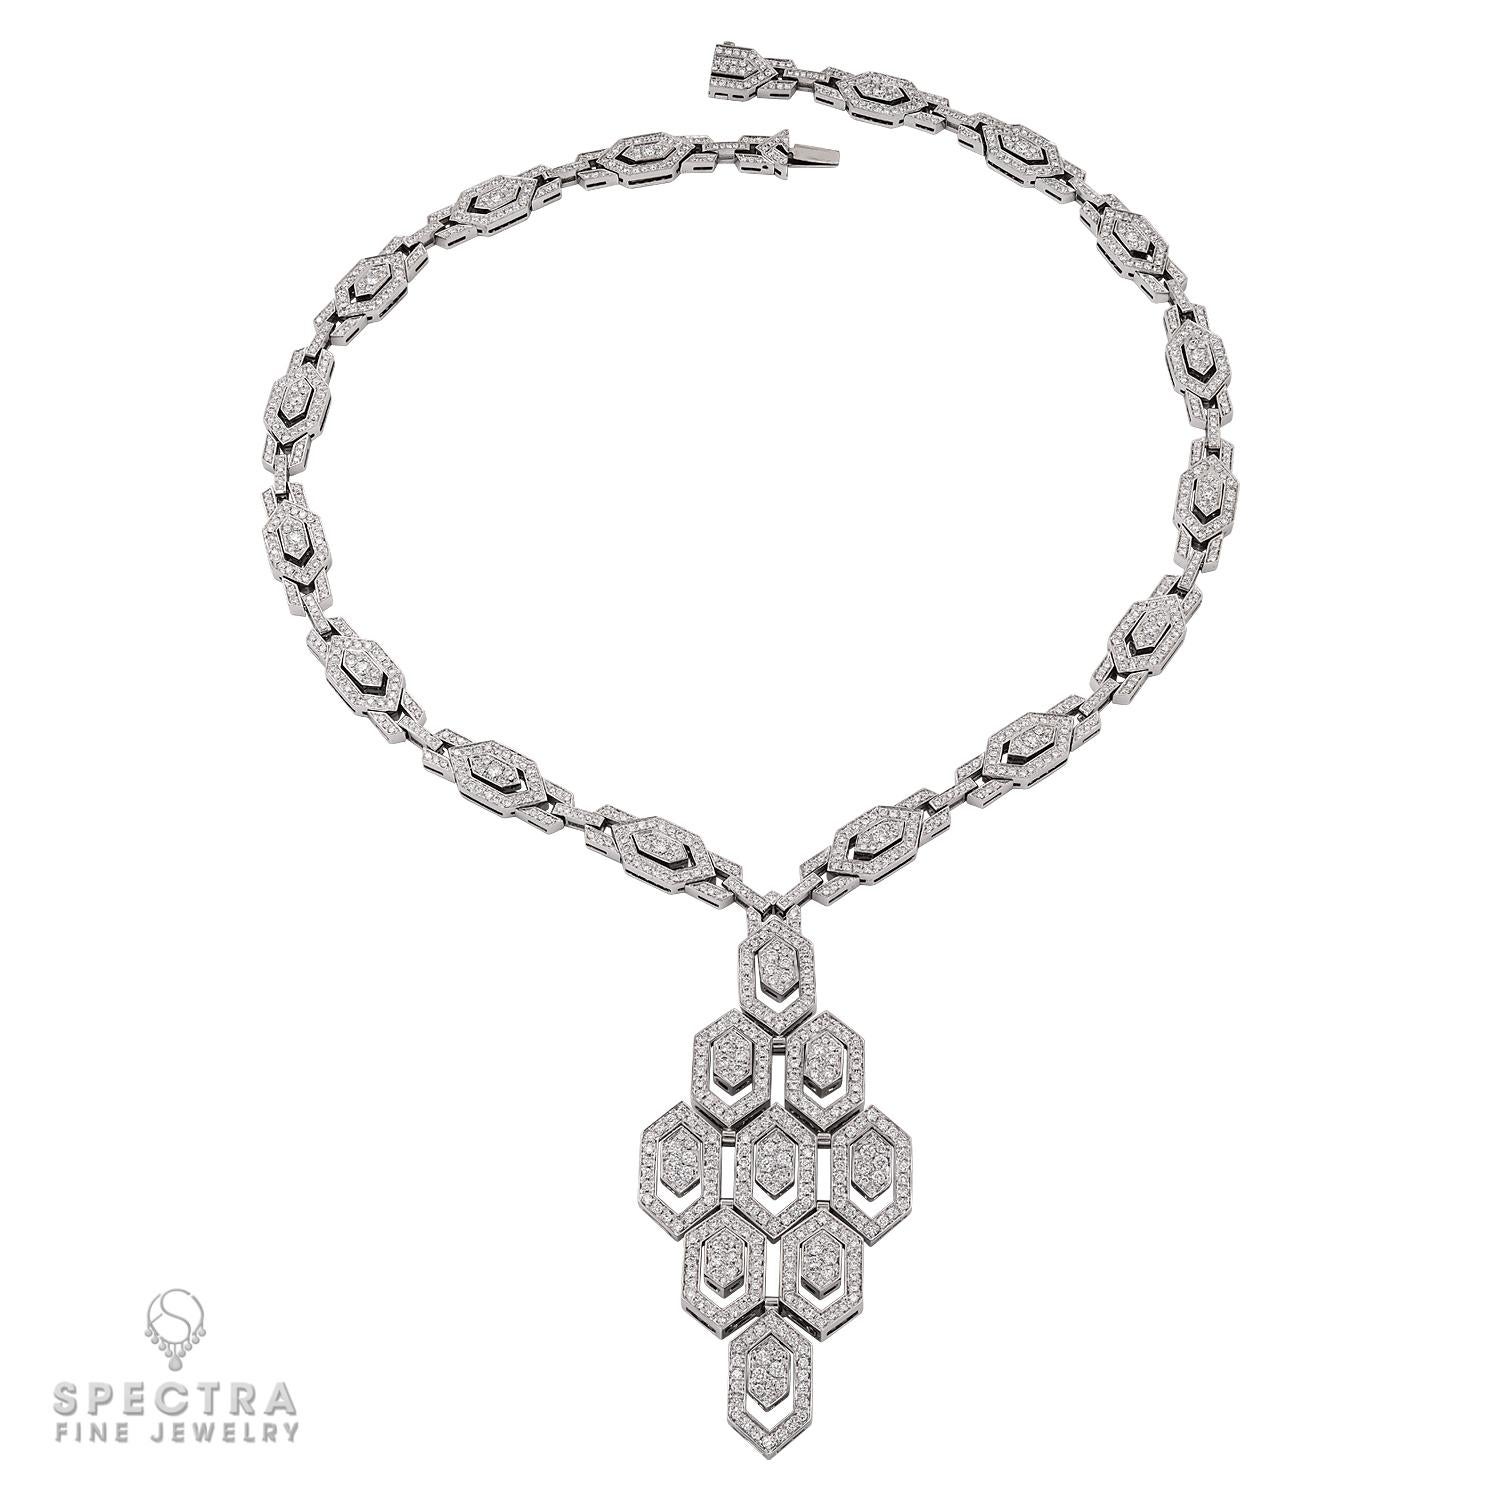 Lassen Sie sich von der faszinierenden Anziehungskraft der Bulgari Serpenti Collana Diamant-Halskette verzaubern, einem zeitlosen Meisterwerk, das mit seinem fesselnden Design und seiner exquisiten Handwerkskunst Epochen überdauert. Inspiriert von